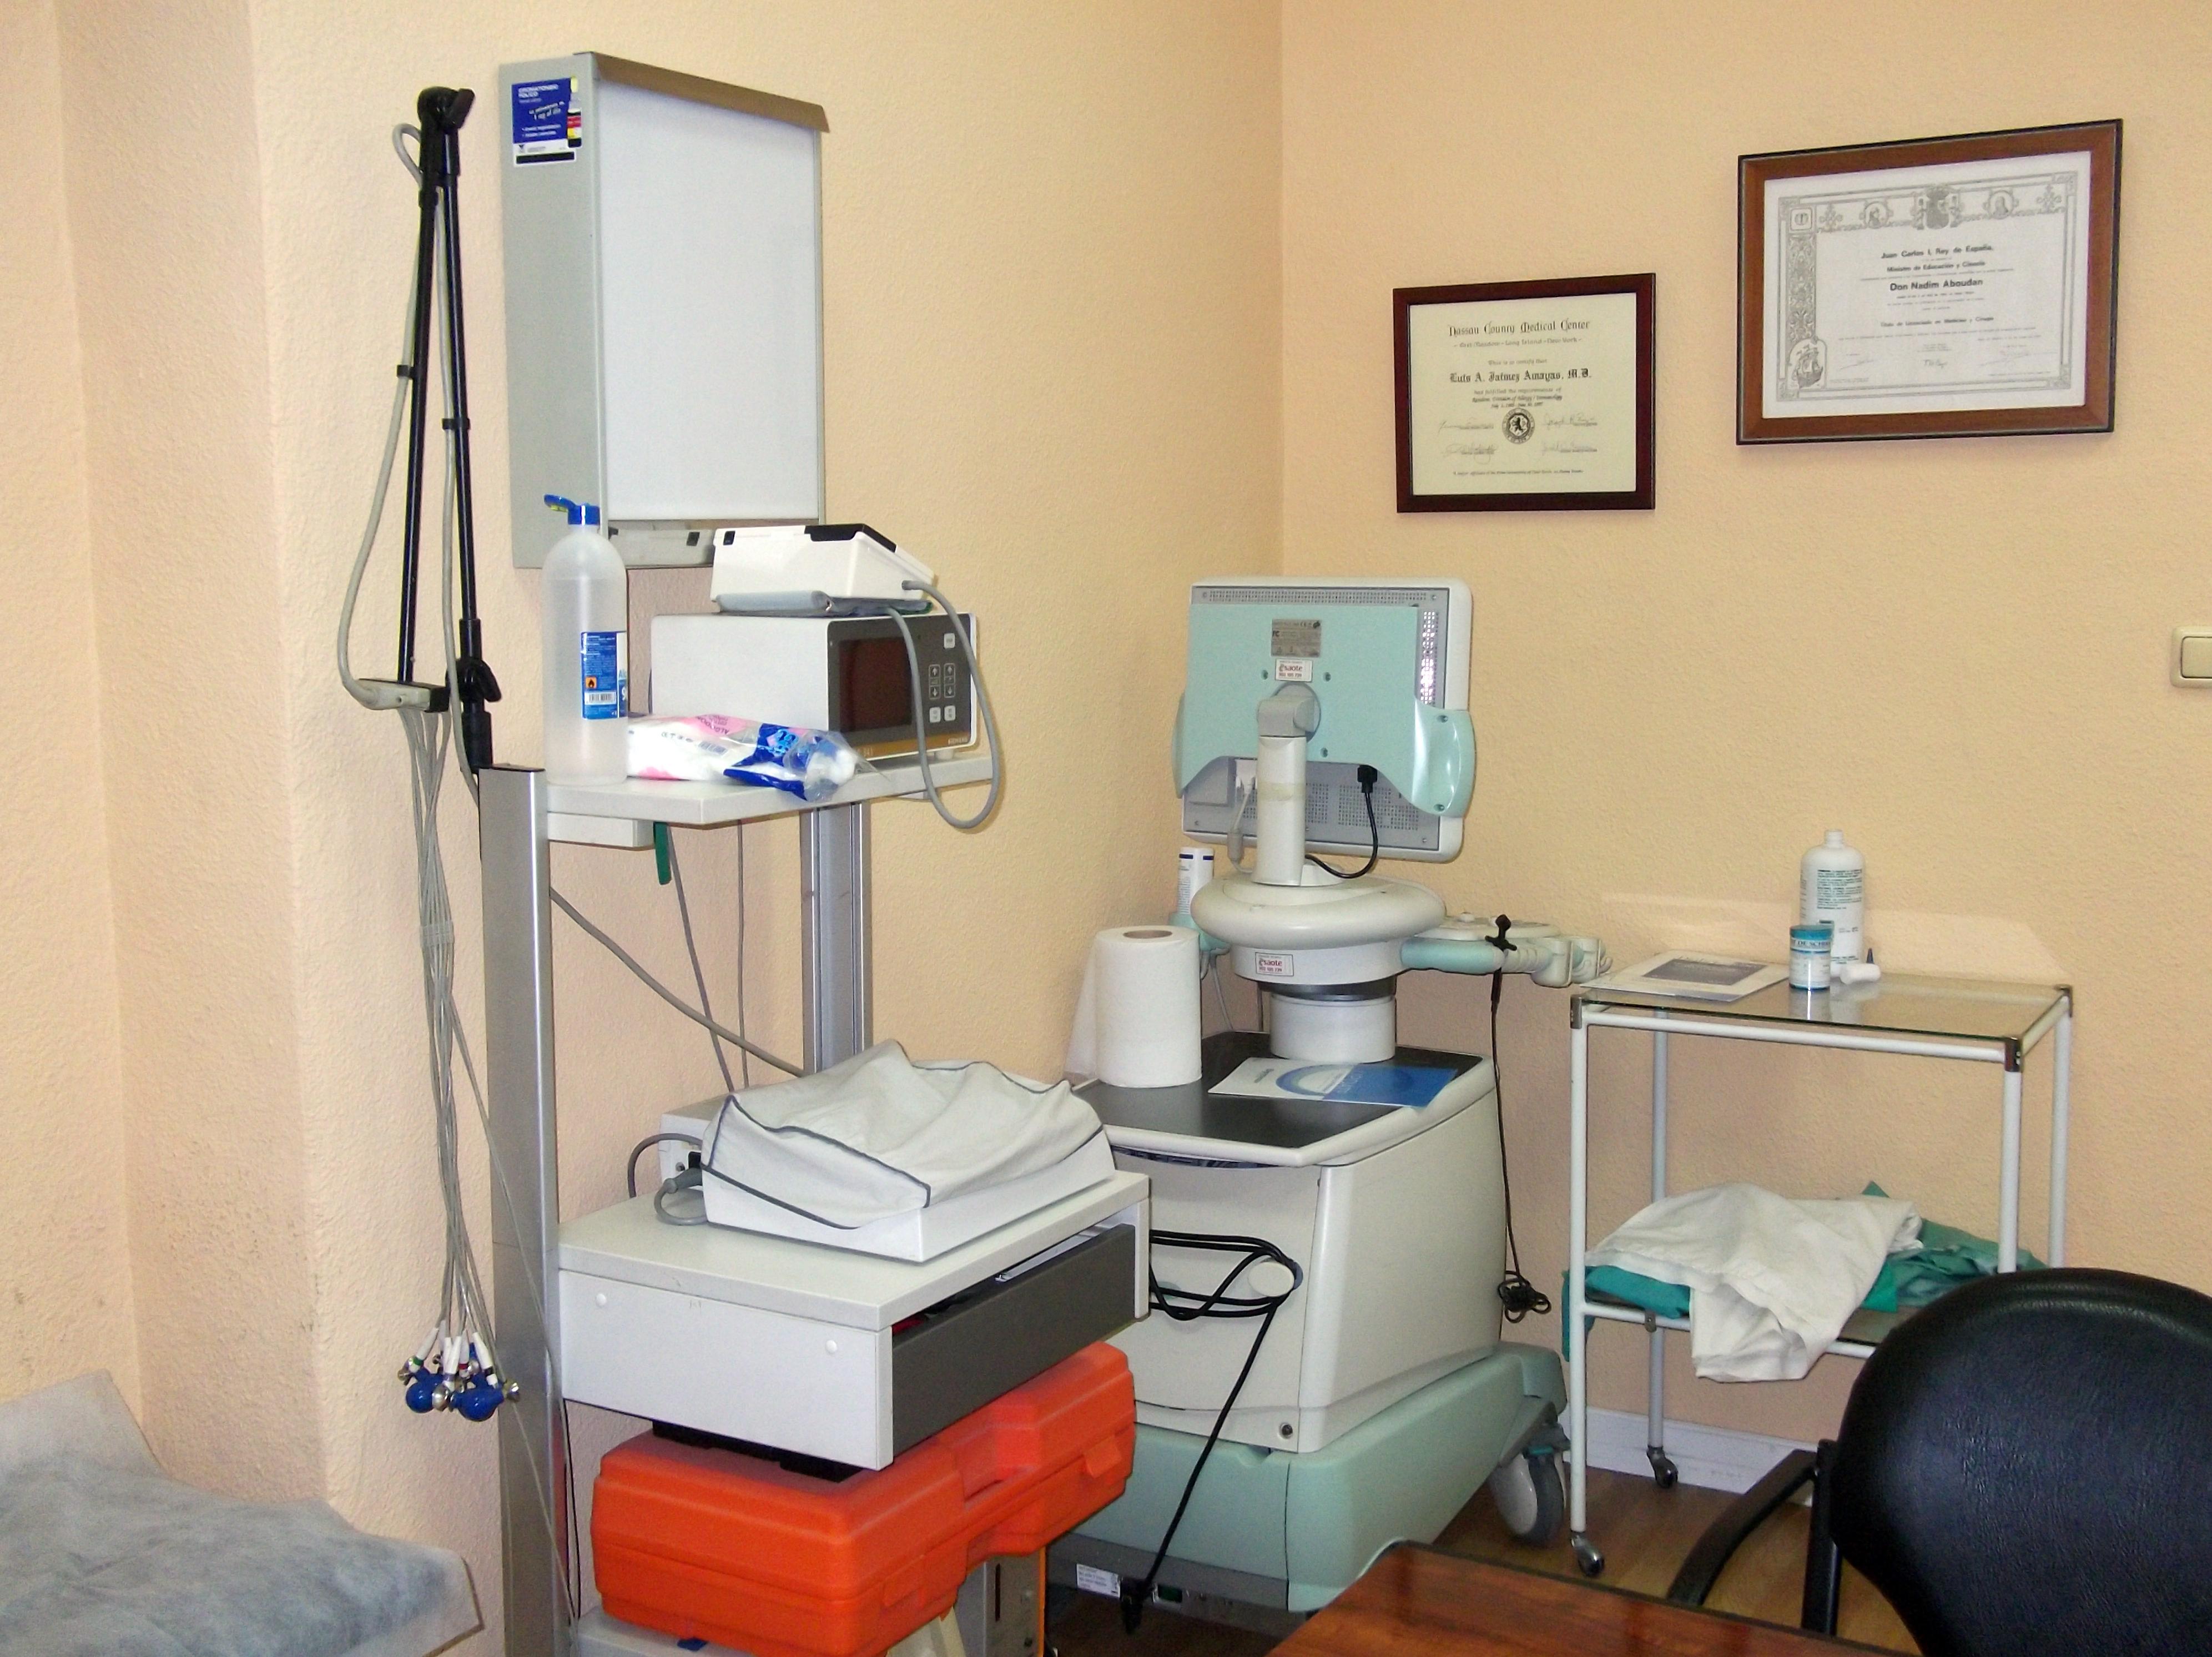 Foto 2 de Reconocimientos y certificados médicos en Úbeda | Centro Médico De Reconocimiento CMR